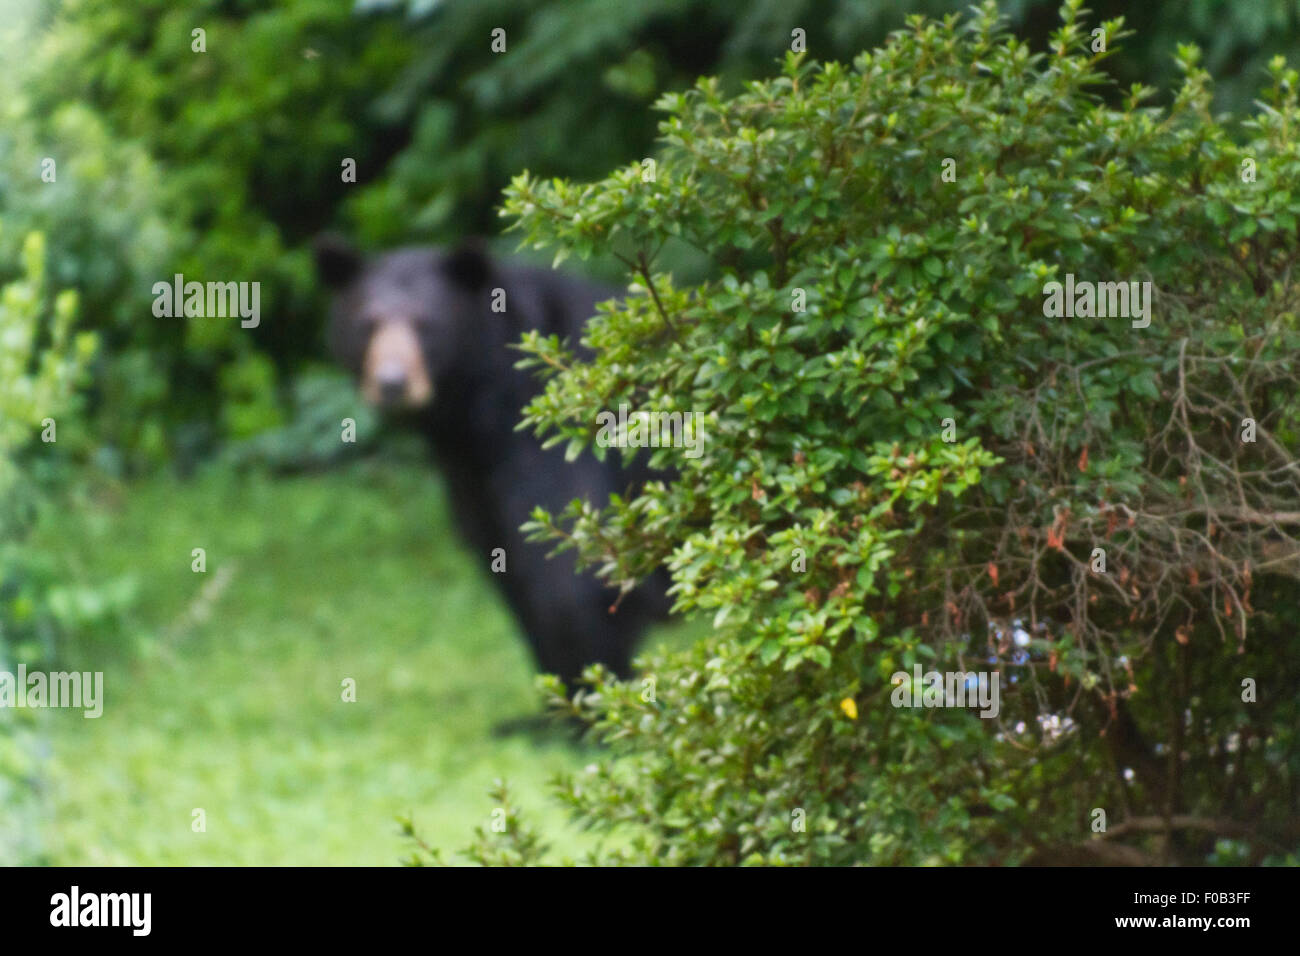 Schwer zu sehen (oder vorhersehen) Gefahr lauert hinter einigen Büschen Sommer in Form von einem großen schwarzen Bären Stockfoto